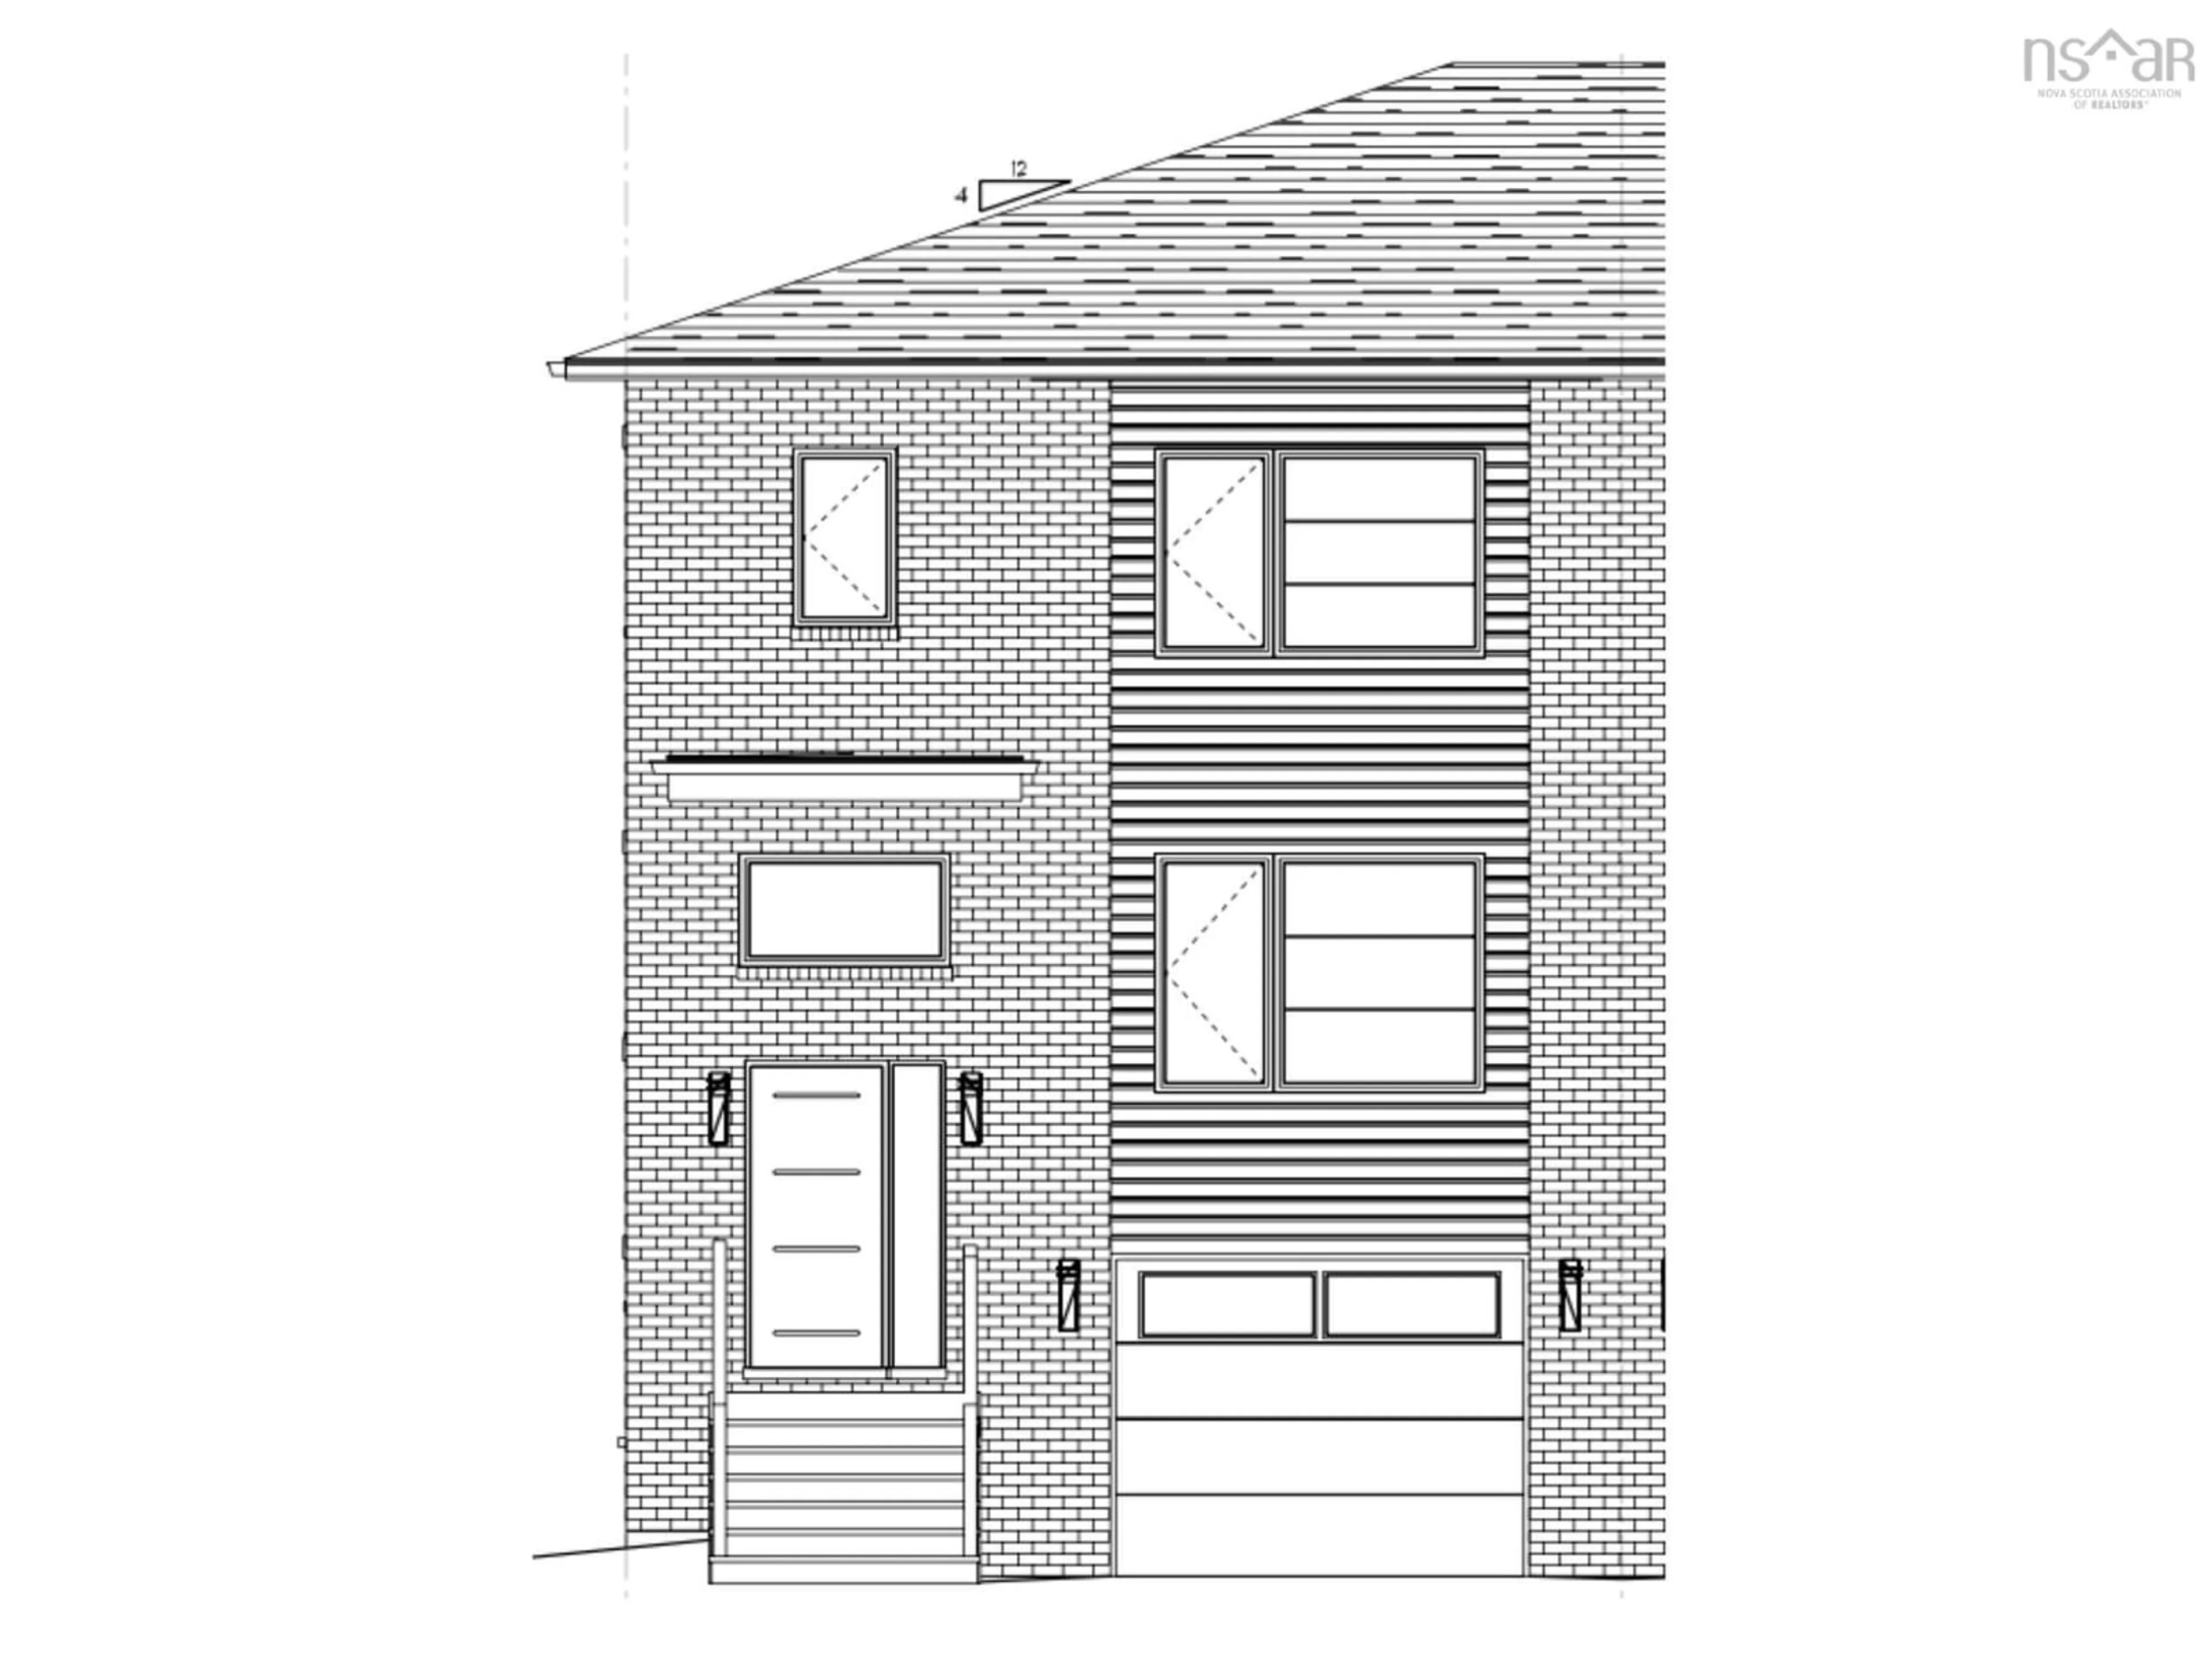 Home with brick exterior material for 1 Glenn Dr #L048A, Lantz Nova Scotia B2S 0K1